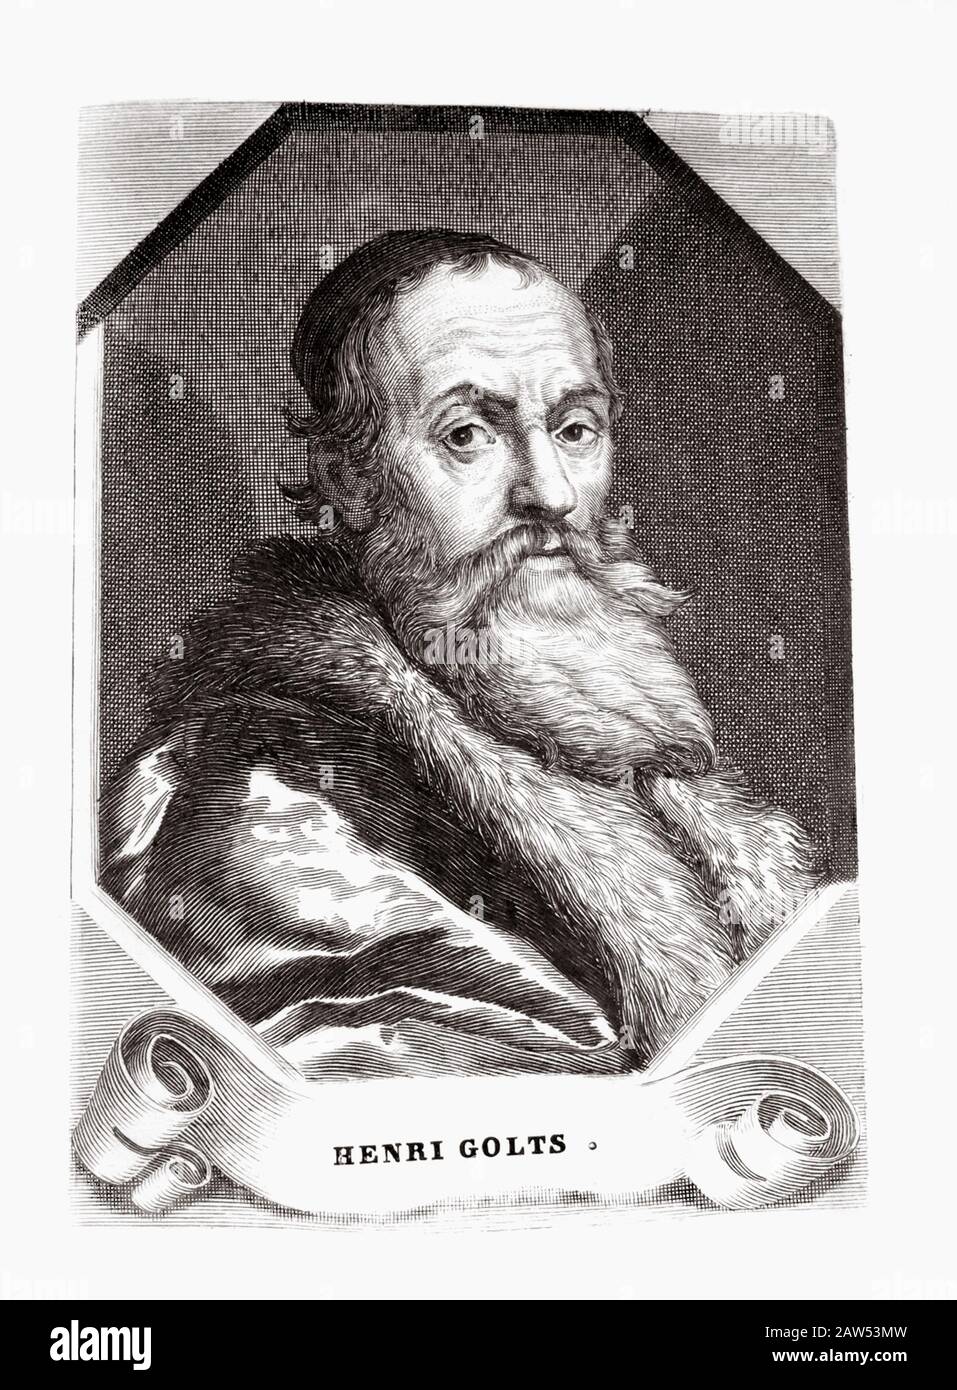 Der aus dem deutschen Stil stammende holländische Maler Hendrick Goltzius (* 1558; † 1617) . Graviertes Porträt aus dem Jahr 1830 in Frankreich . - HENRI G. Stockfoto